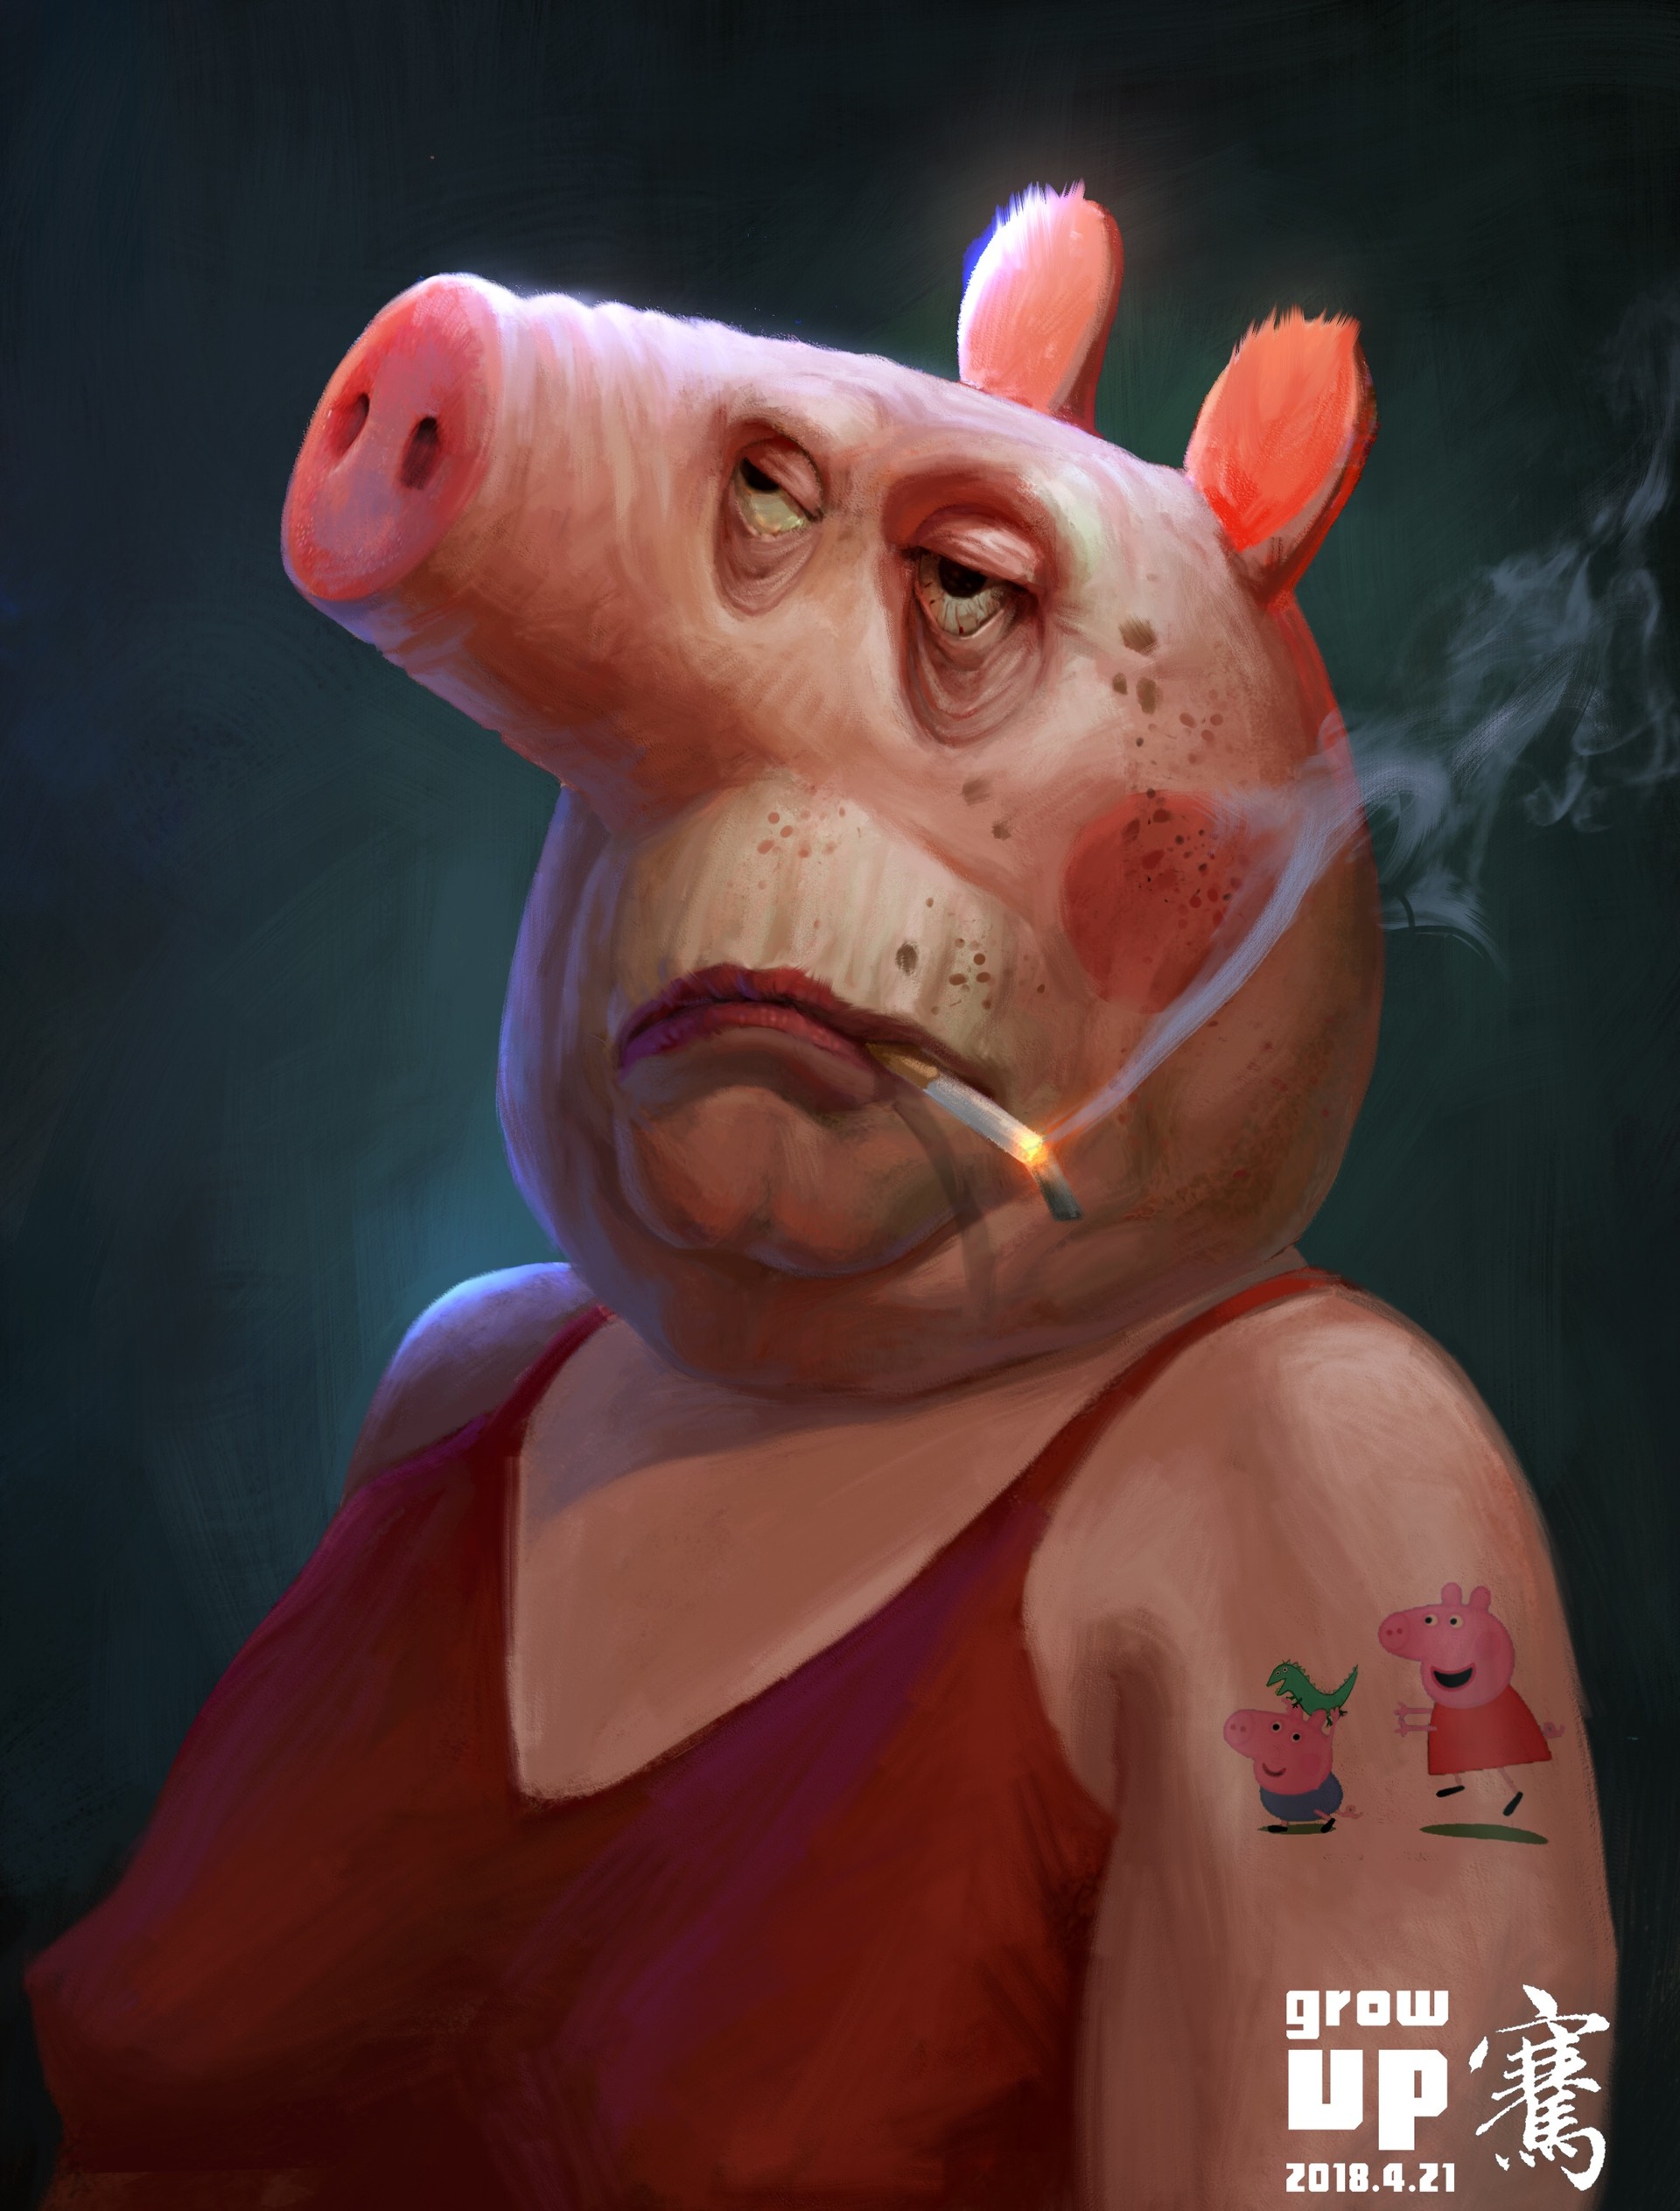 Свинья глупой. Свиньи. Свинья с сигаретой. Cdbyzm c cbufhjq.